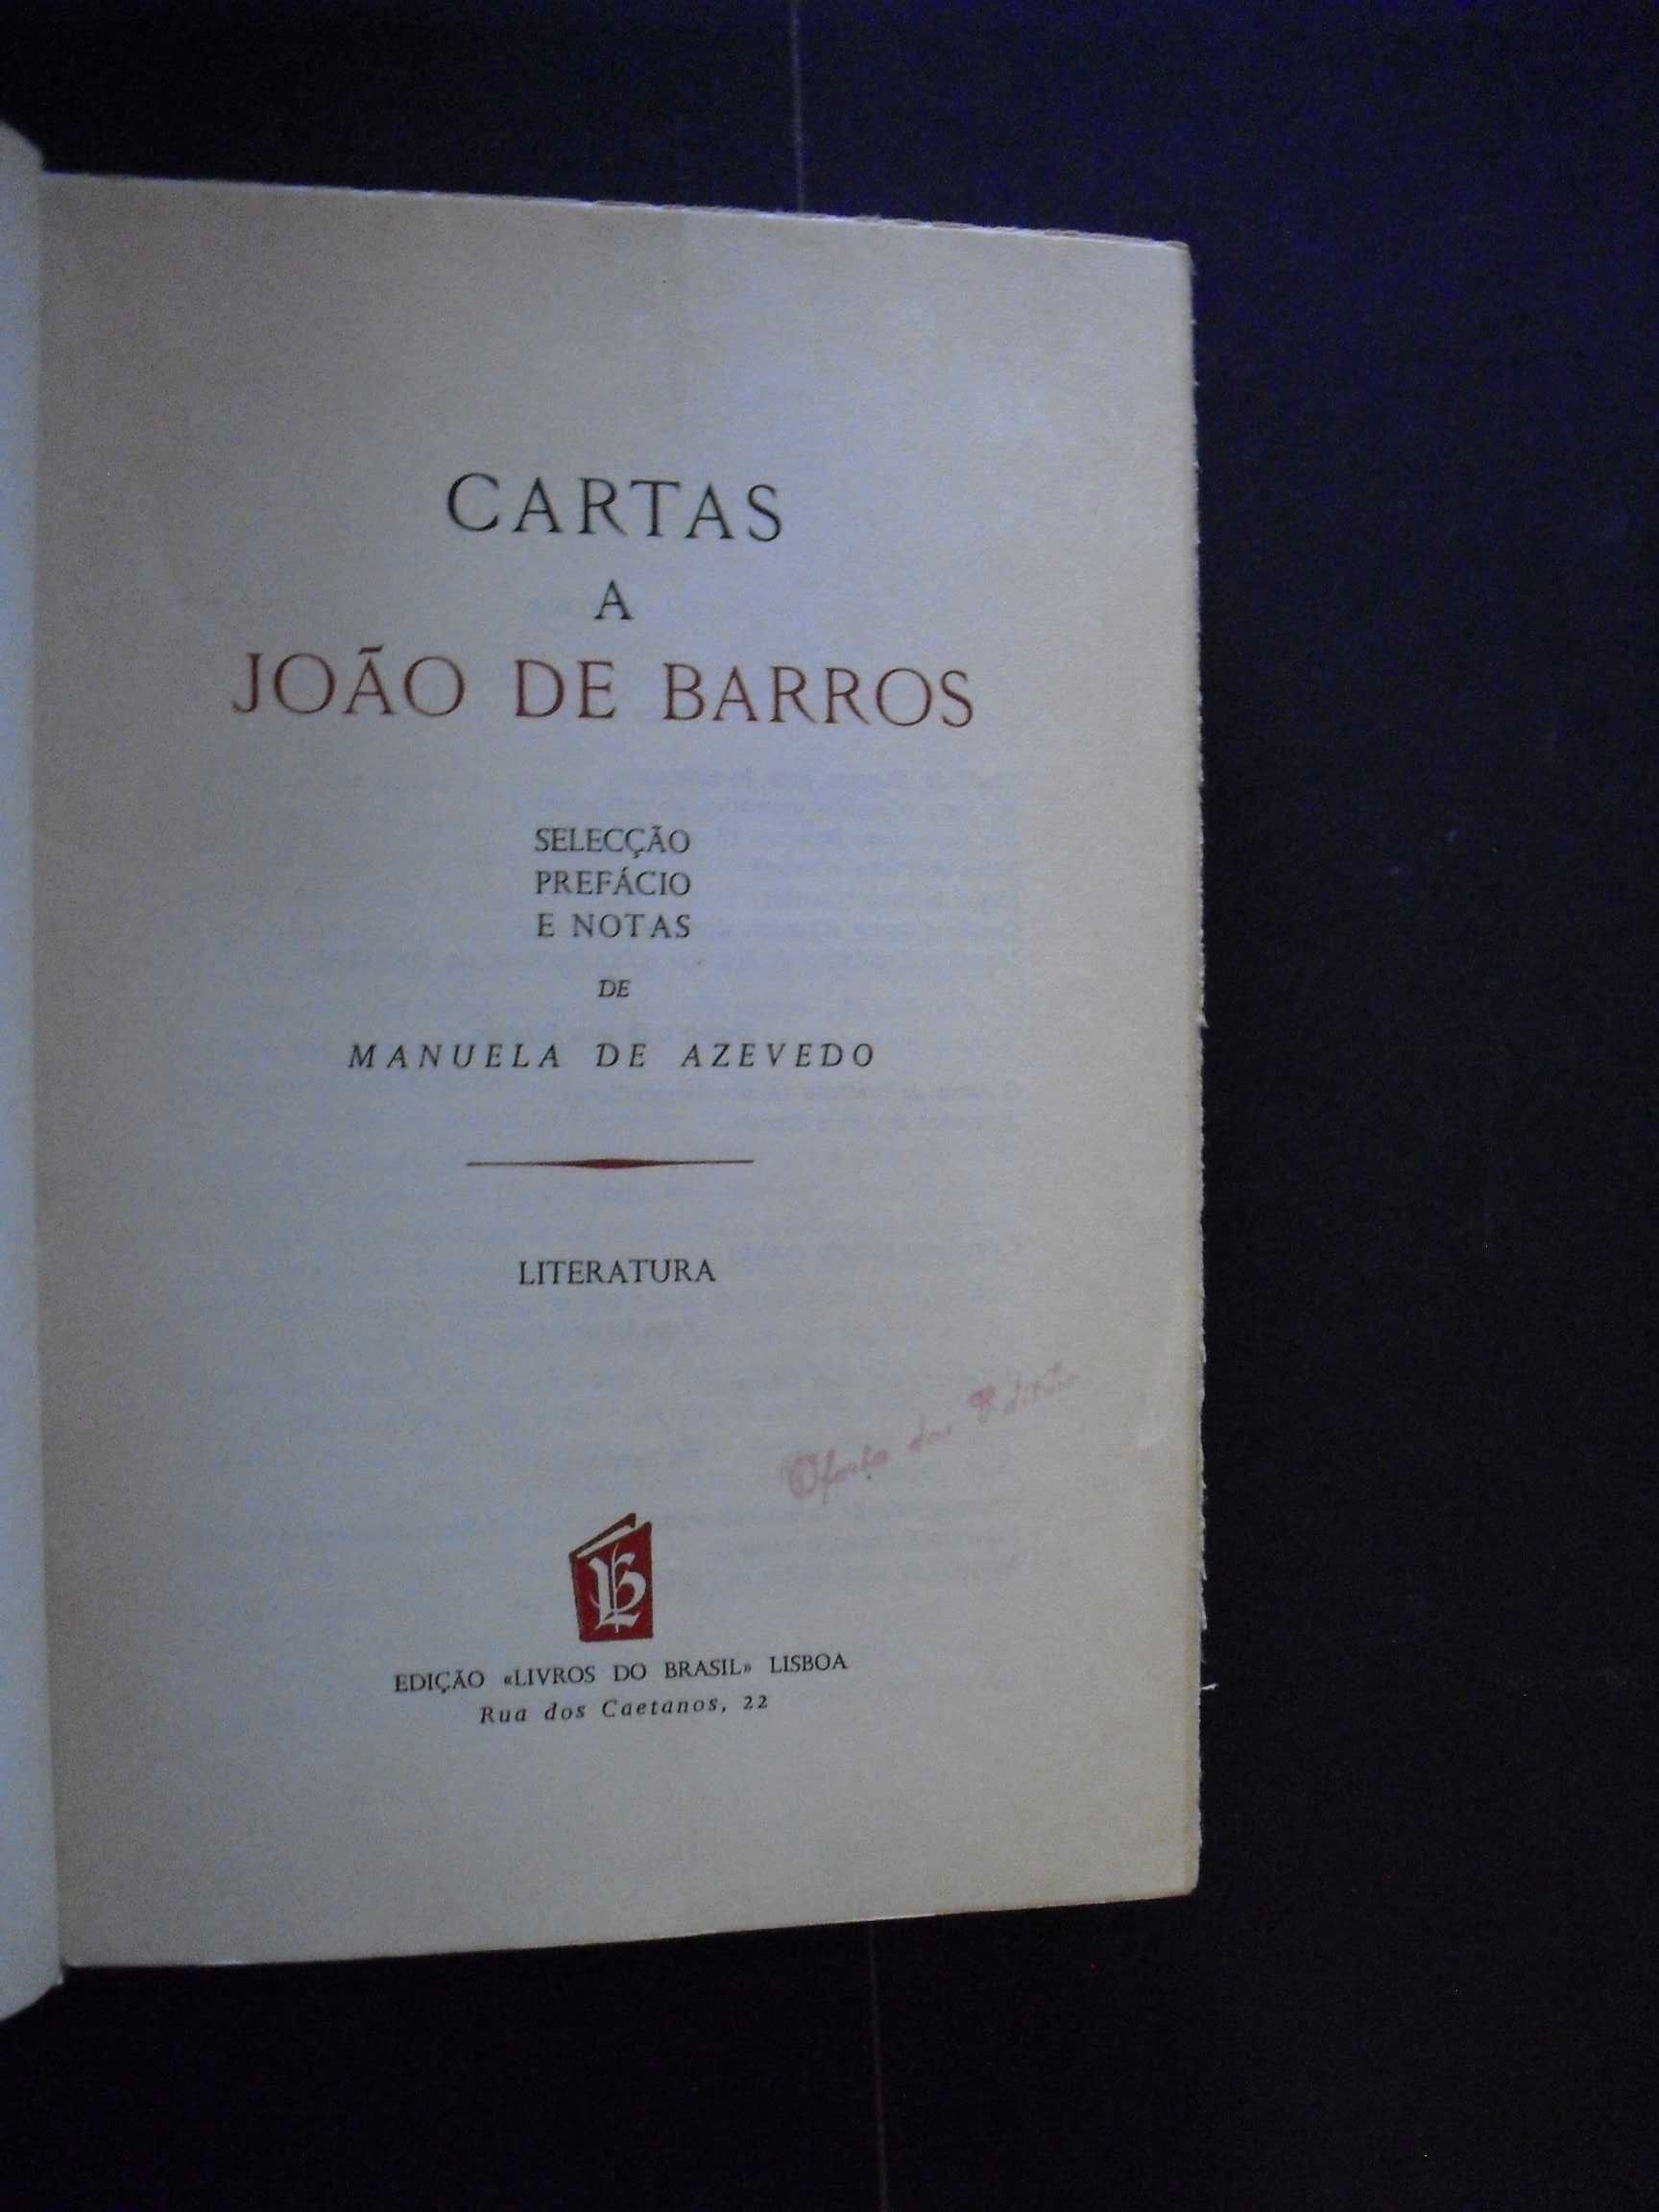 Azevedo (Manuela de,Selecção,Prefácio );Cartas a João de Barros